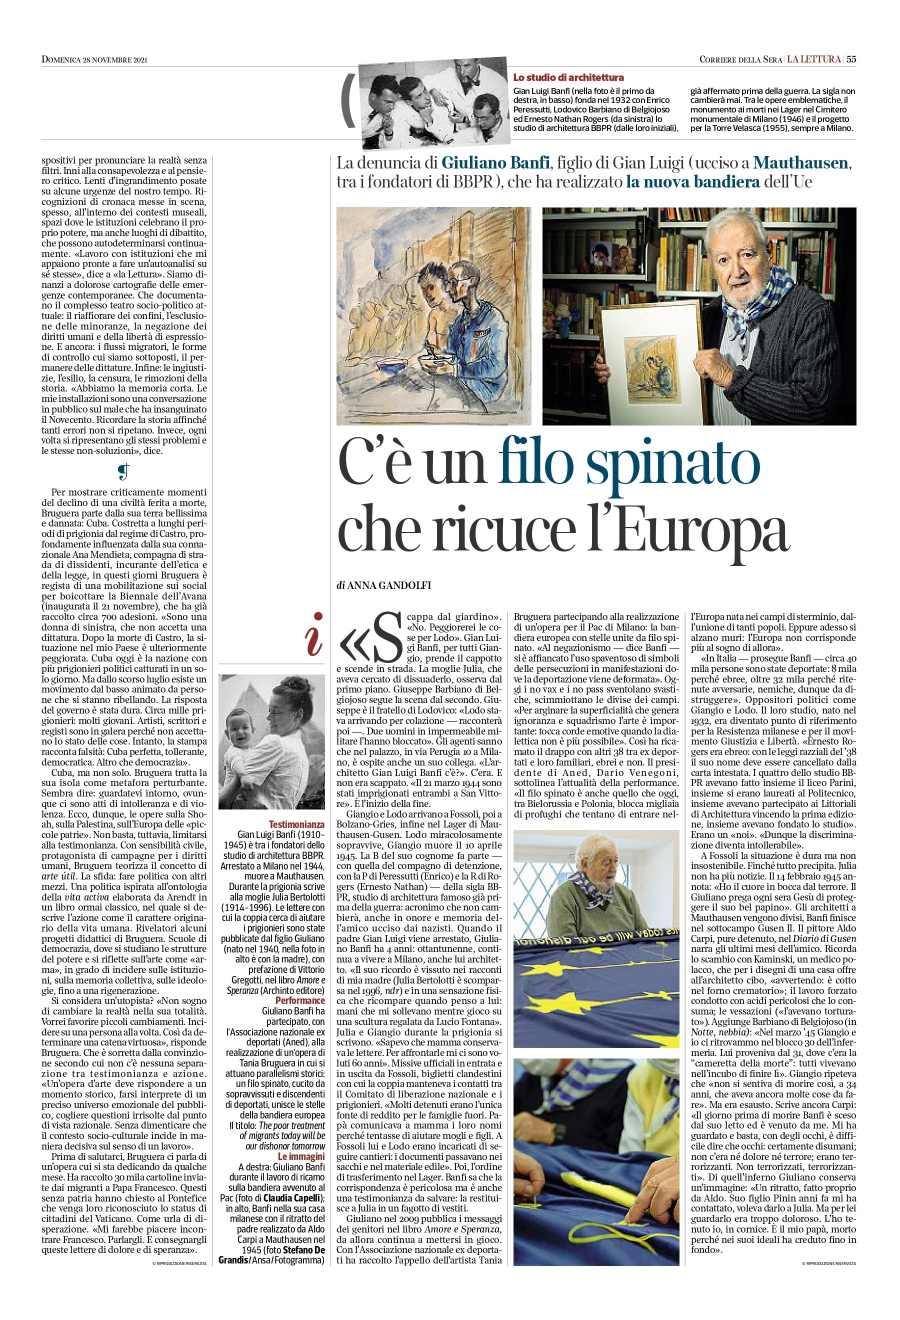 C'è un filo spinato che ricuce l'Europa: la denuncia di Giuliano Banfi in un articolo de La Lettura del Corriere